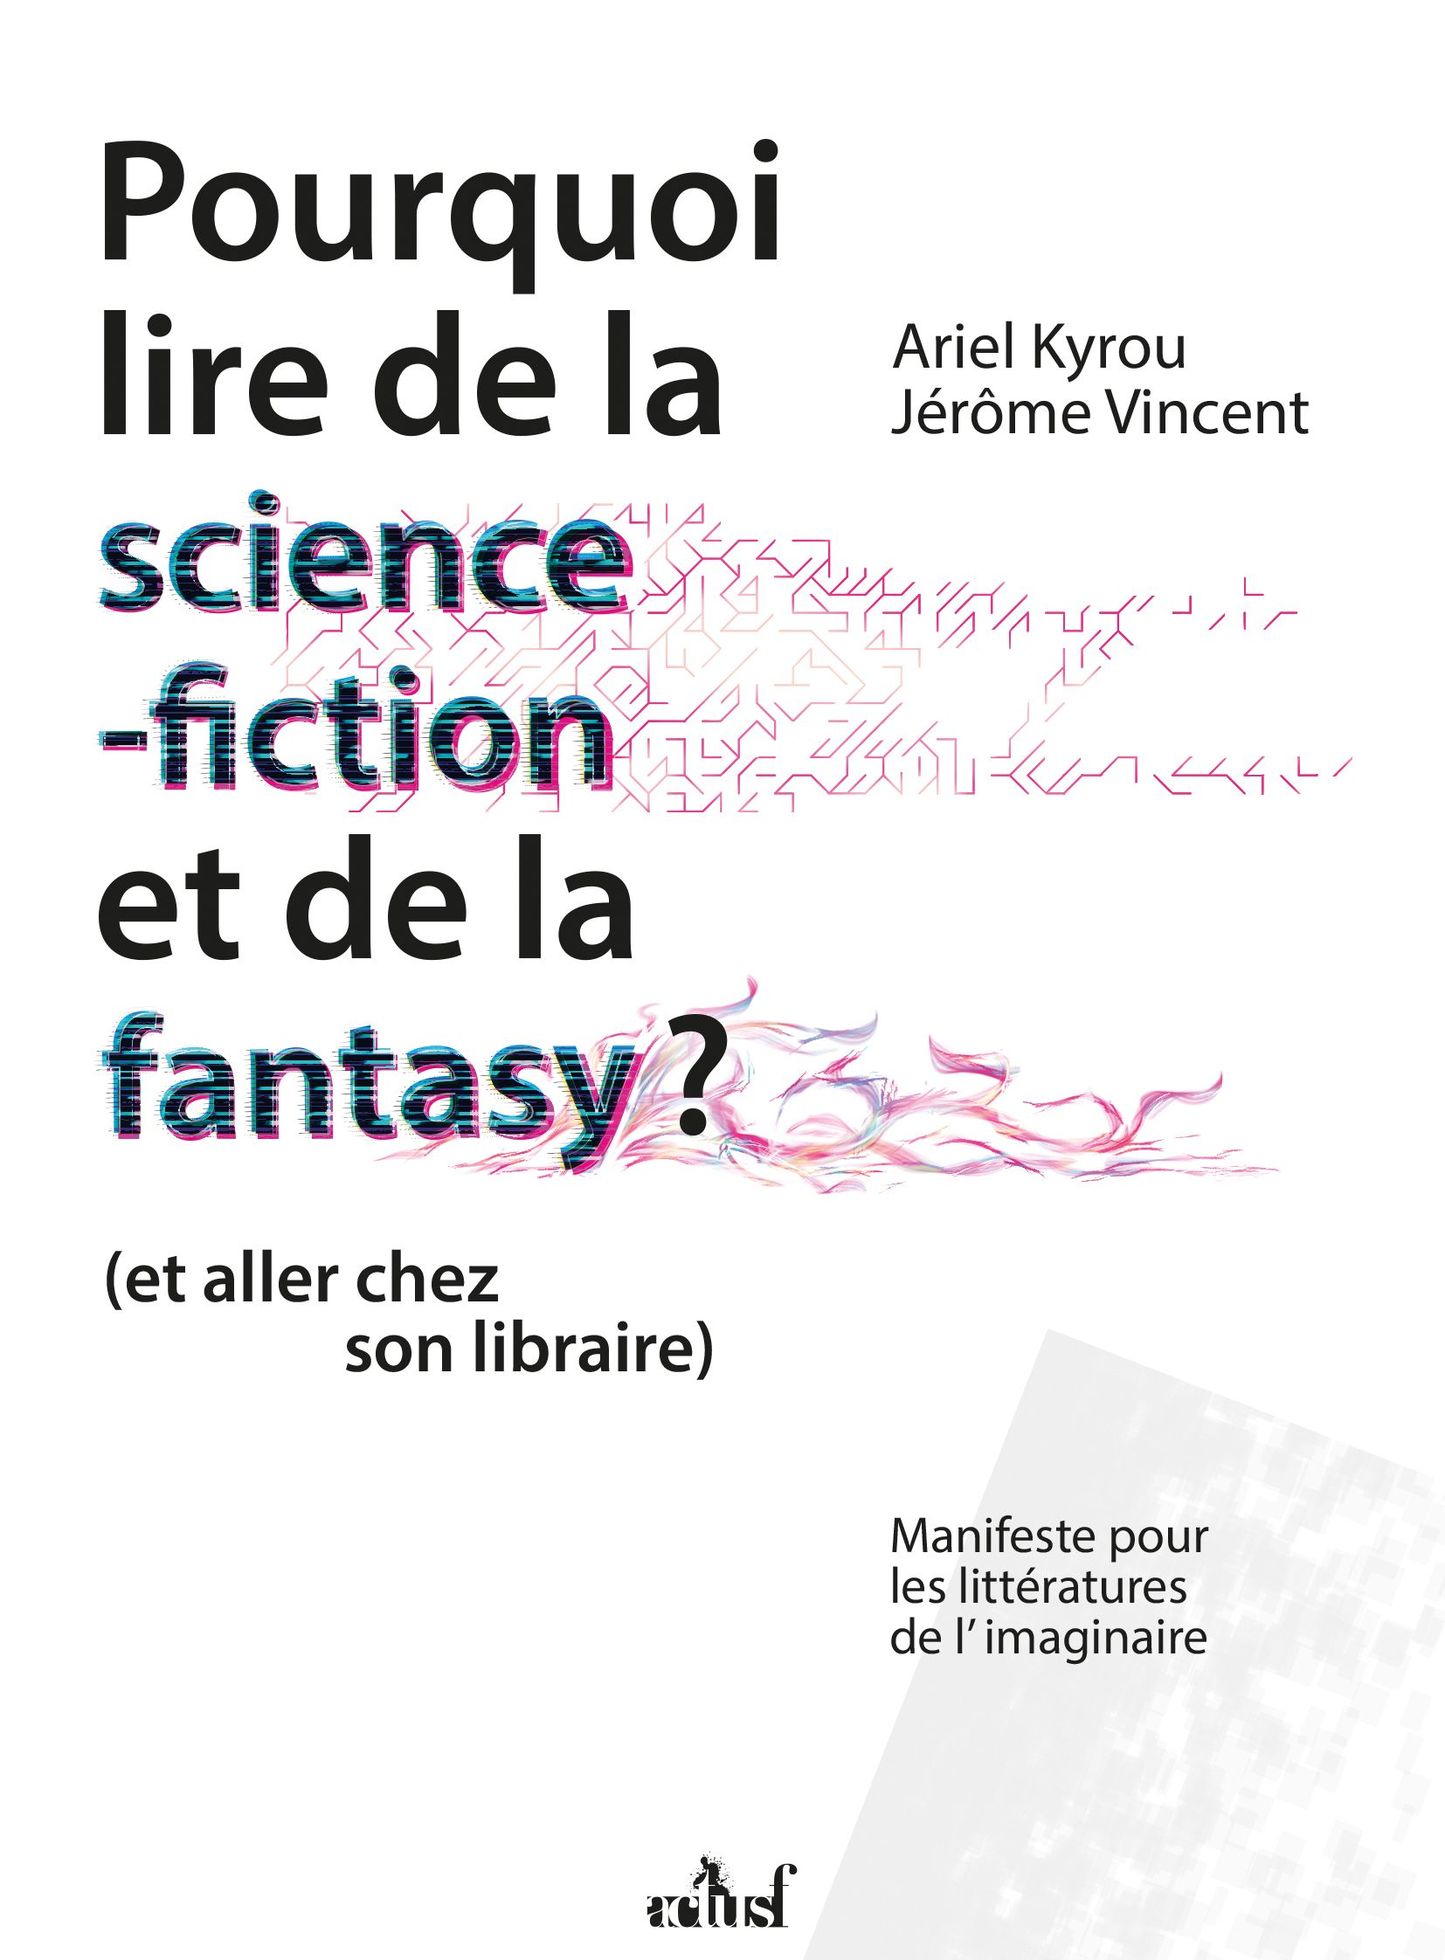 Découvrez la couverture de Pourquoi lire de la science-fiction et de la fantasy ? aux nouvelles éditions Actusf